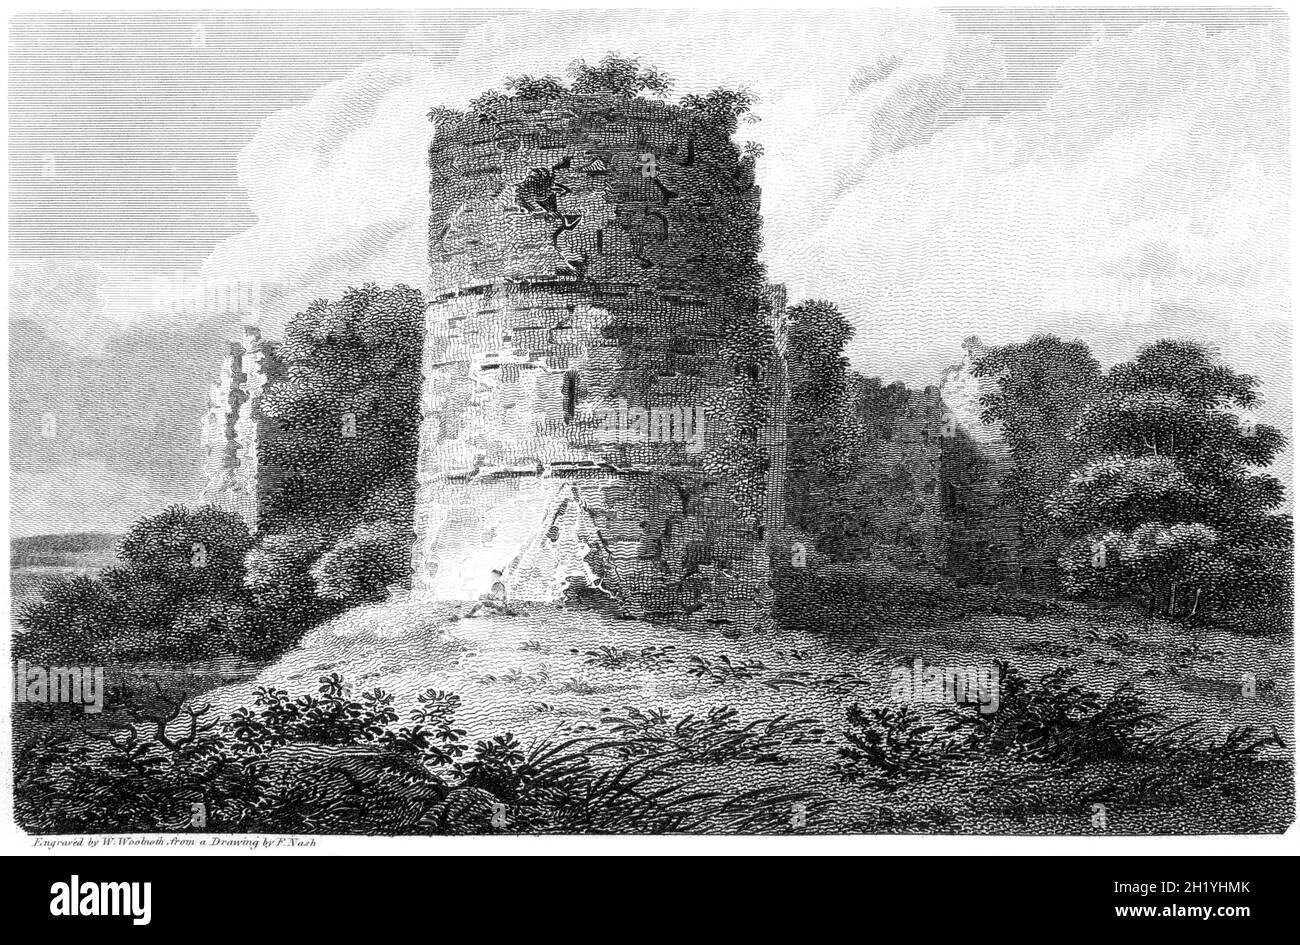 Ein Stich von Goodrich Castle, Herefordshire, gescannt in hoher Auflösung aus einem Buch, das 1812 gedruckt wurde. Für urheberrechtlich frei gehalten. Stockfoto